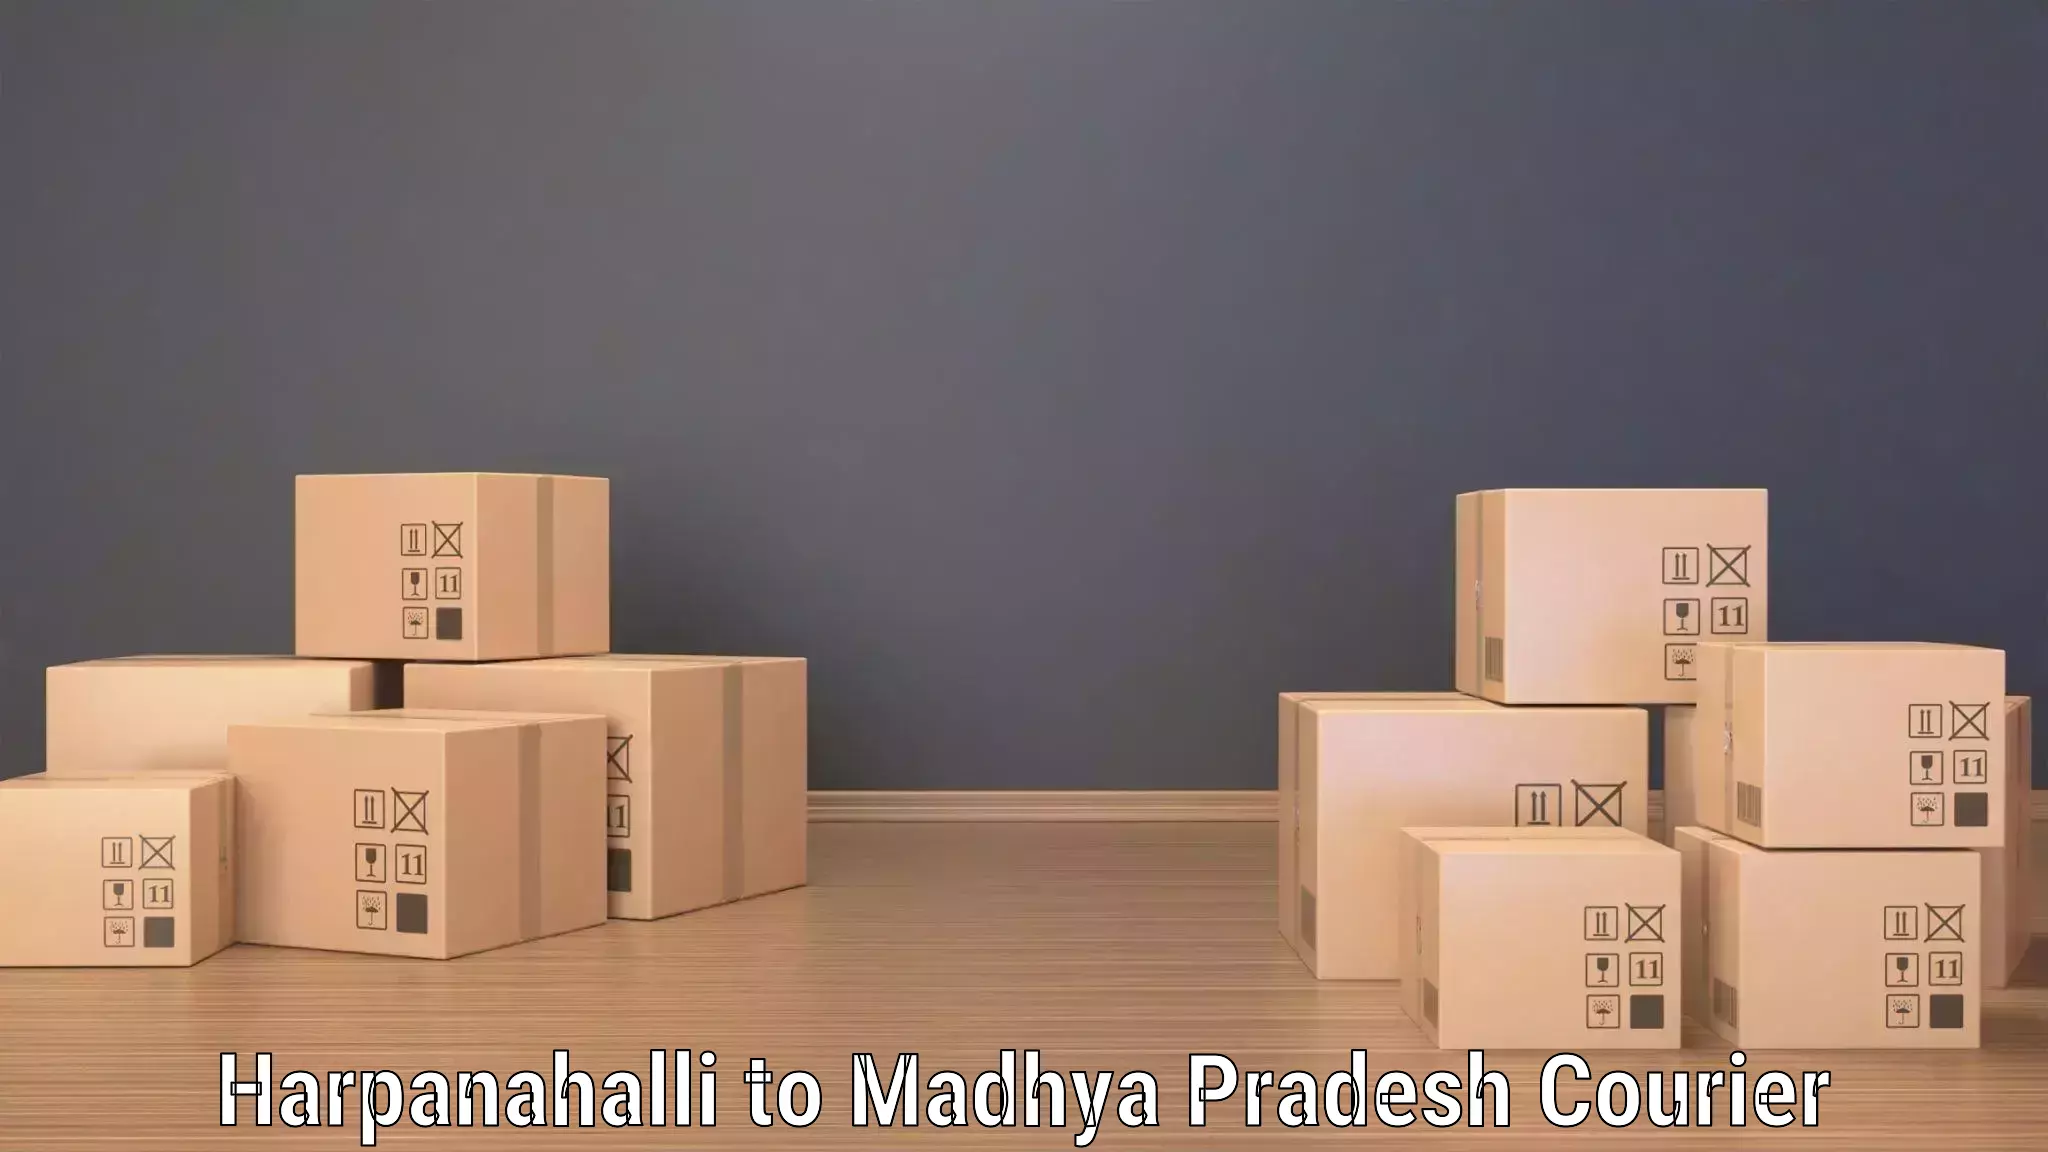 Logistics and distribution Harpanahalli to Seoni Malwa